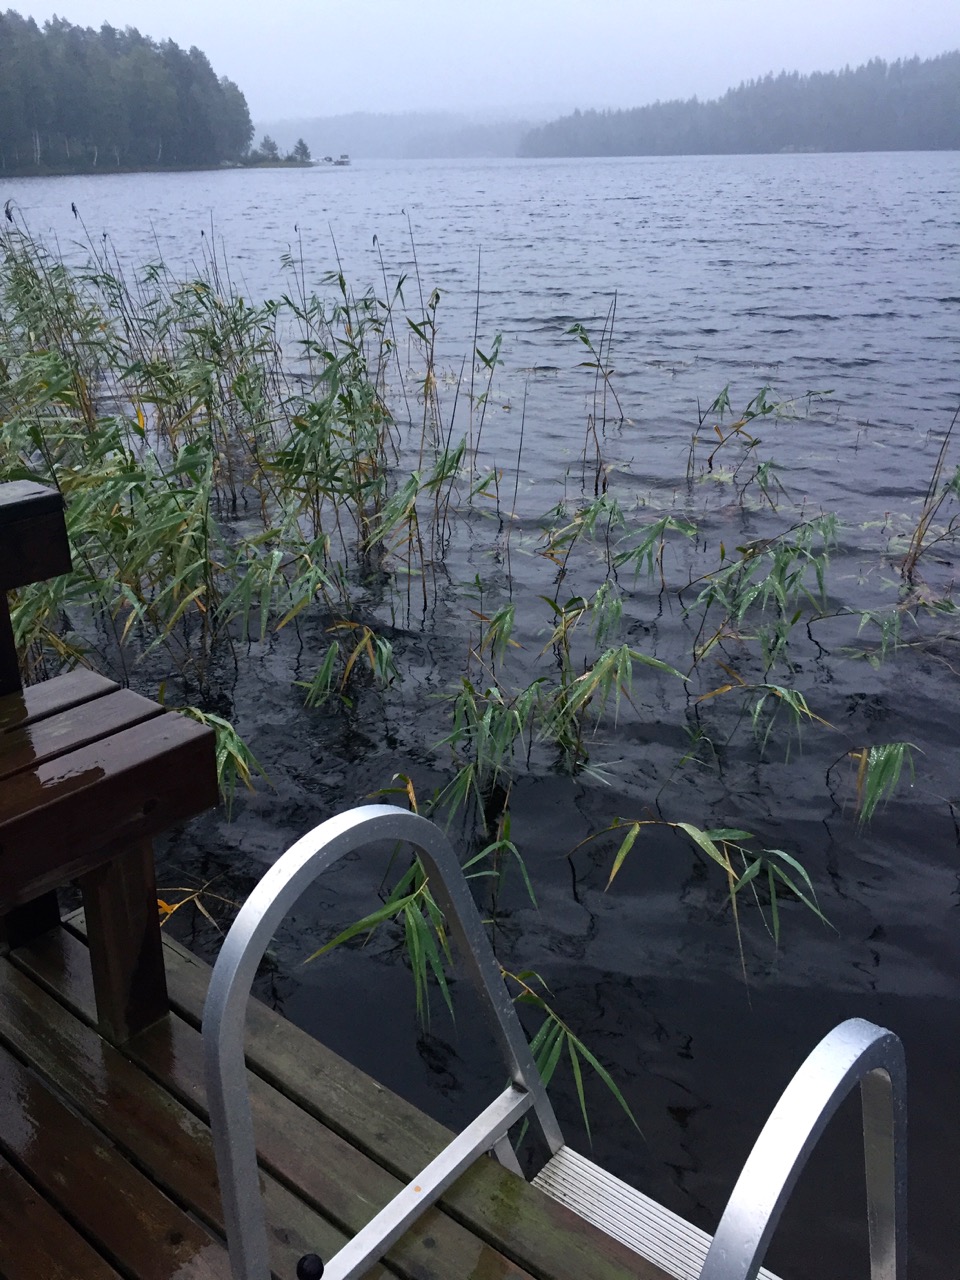 Finnland im September – Nach der Sauna in den See